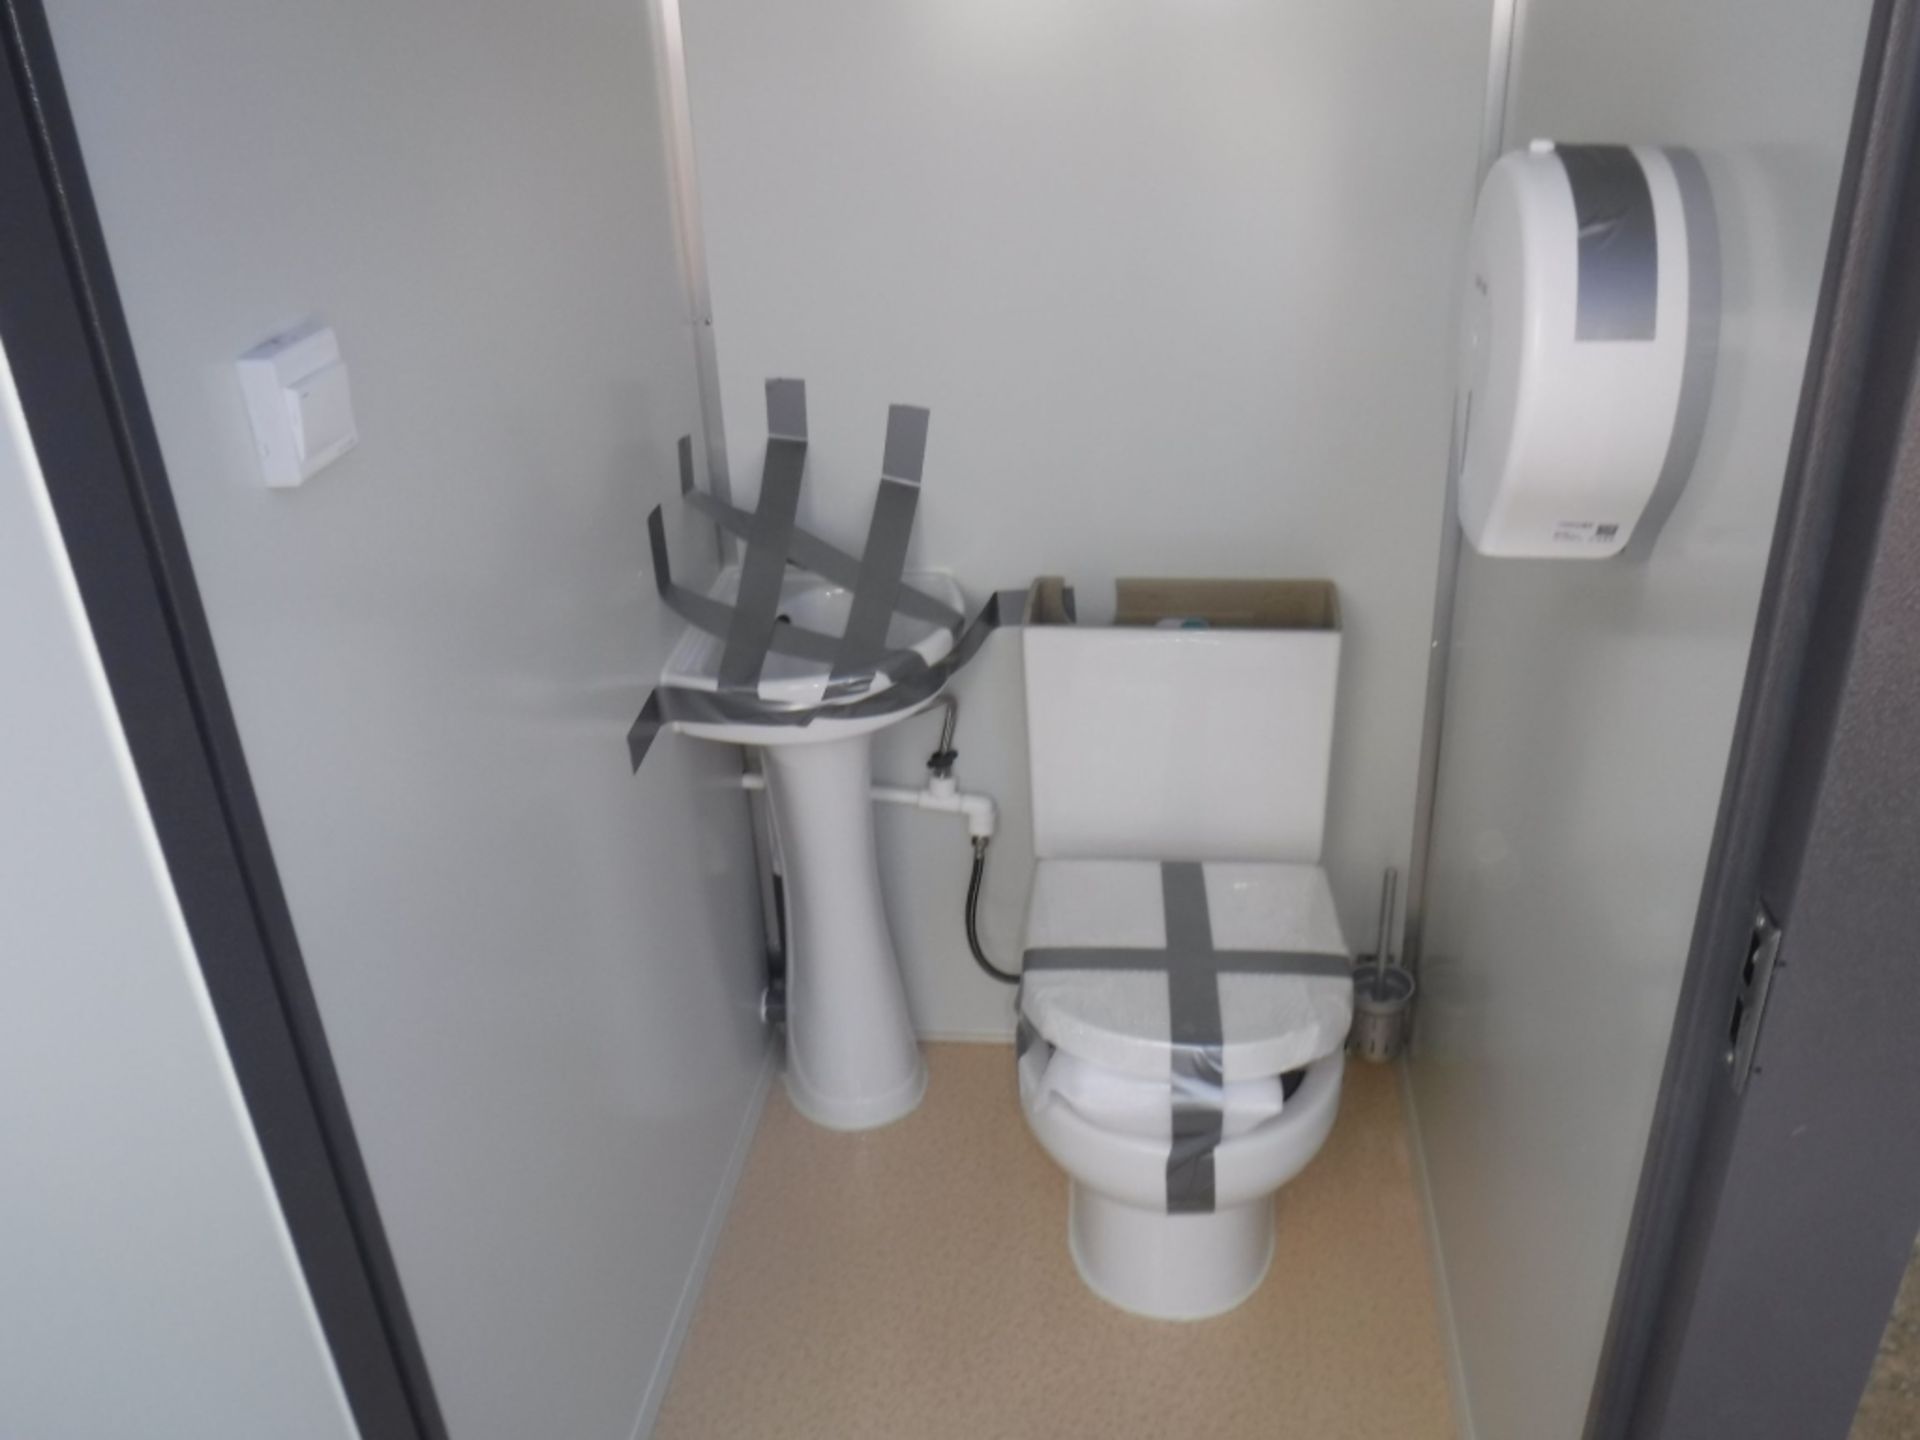 Unused 2020 Bastone Dual Toilet Unit w/Sinks, - Image 13 of 19